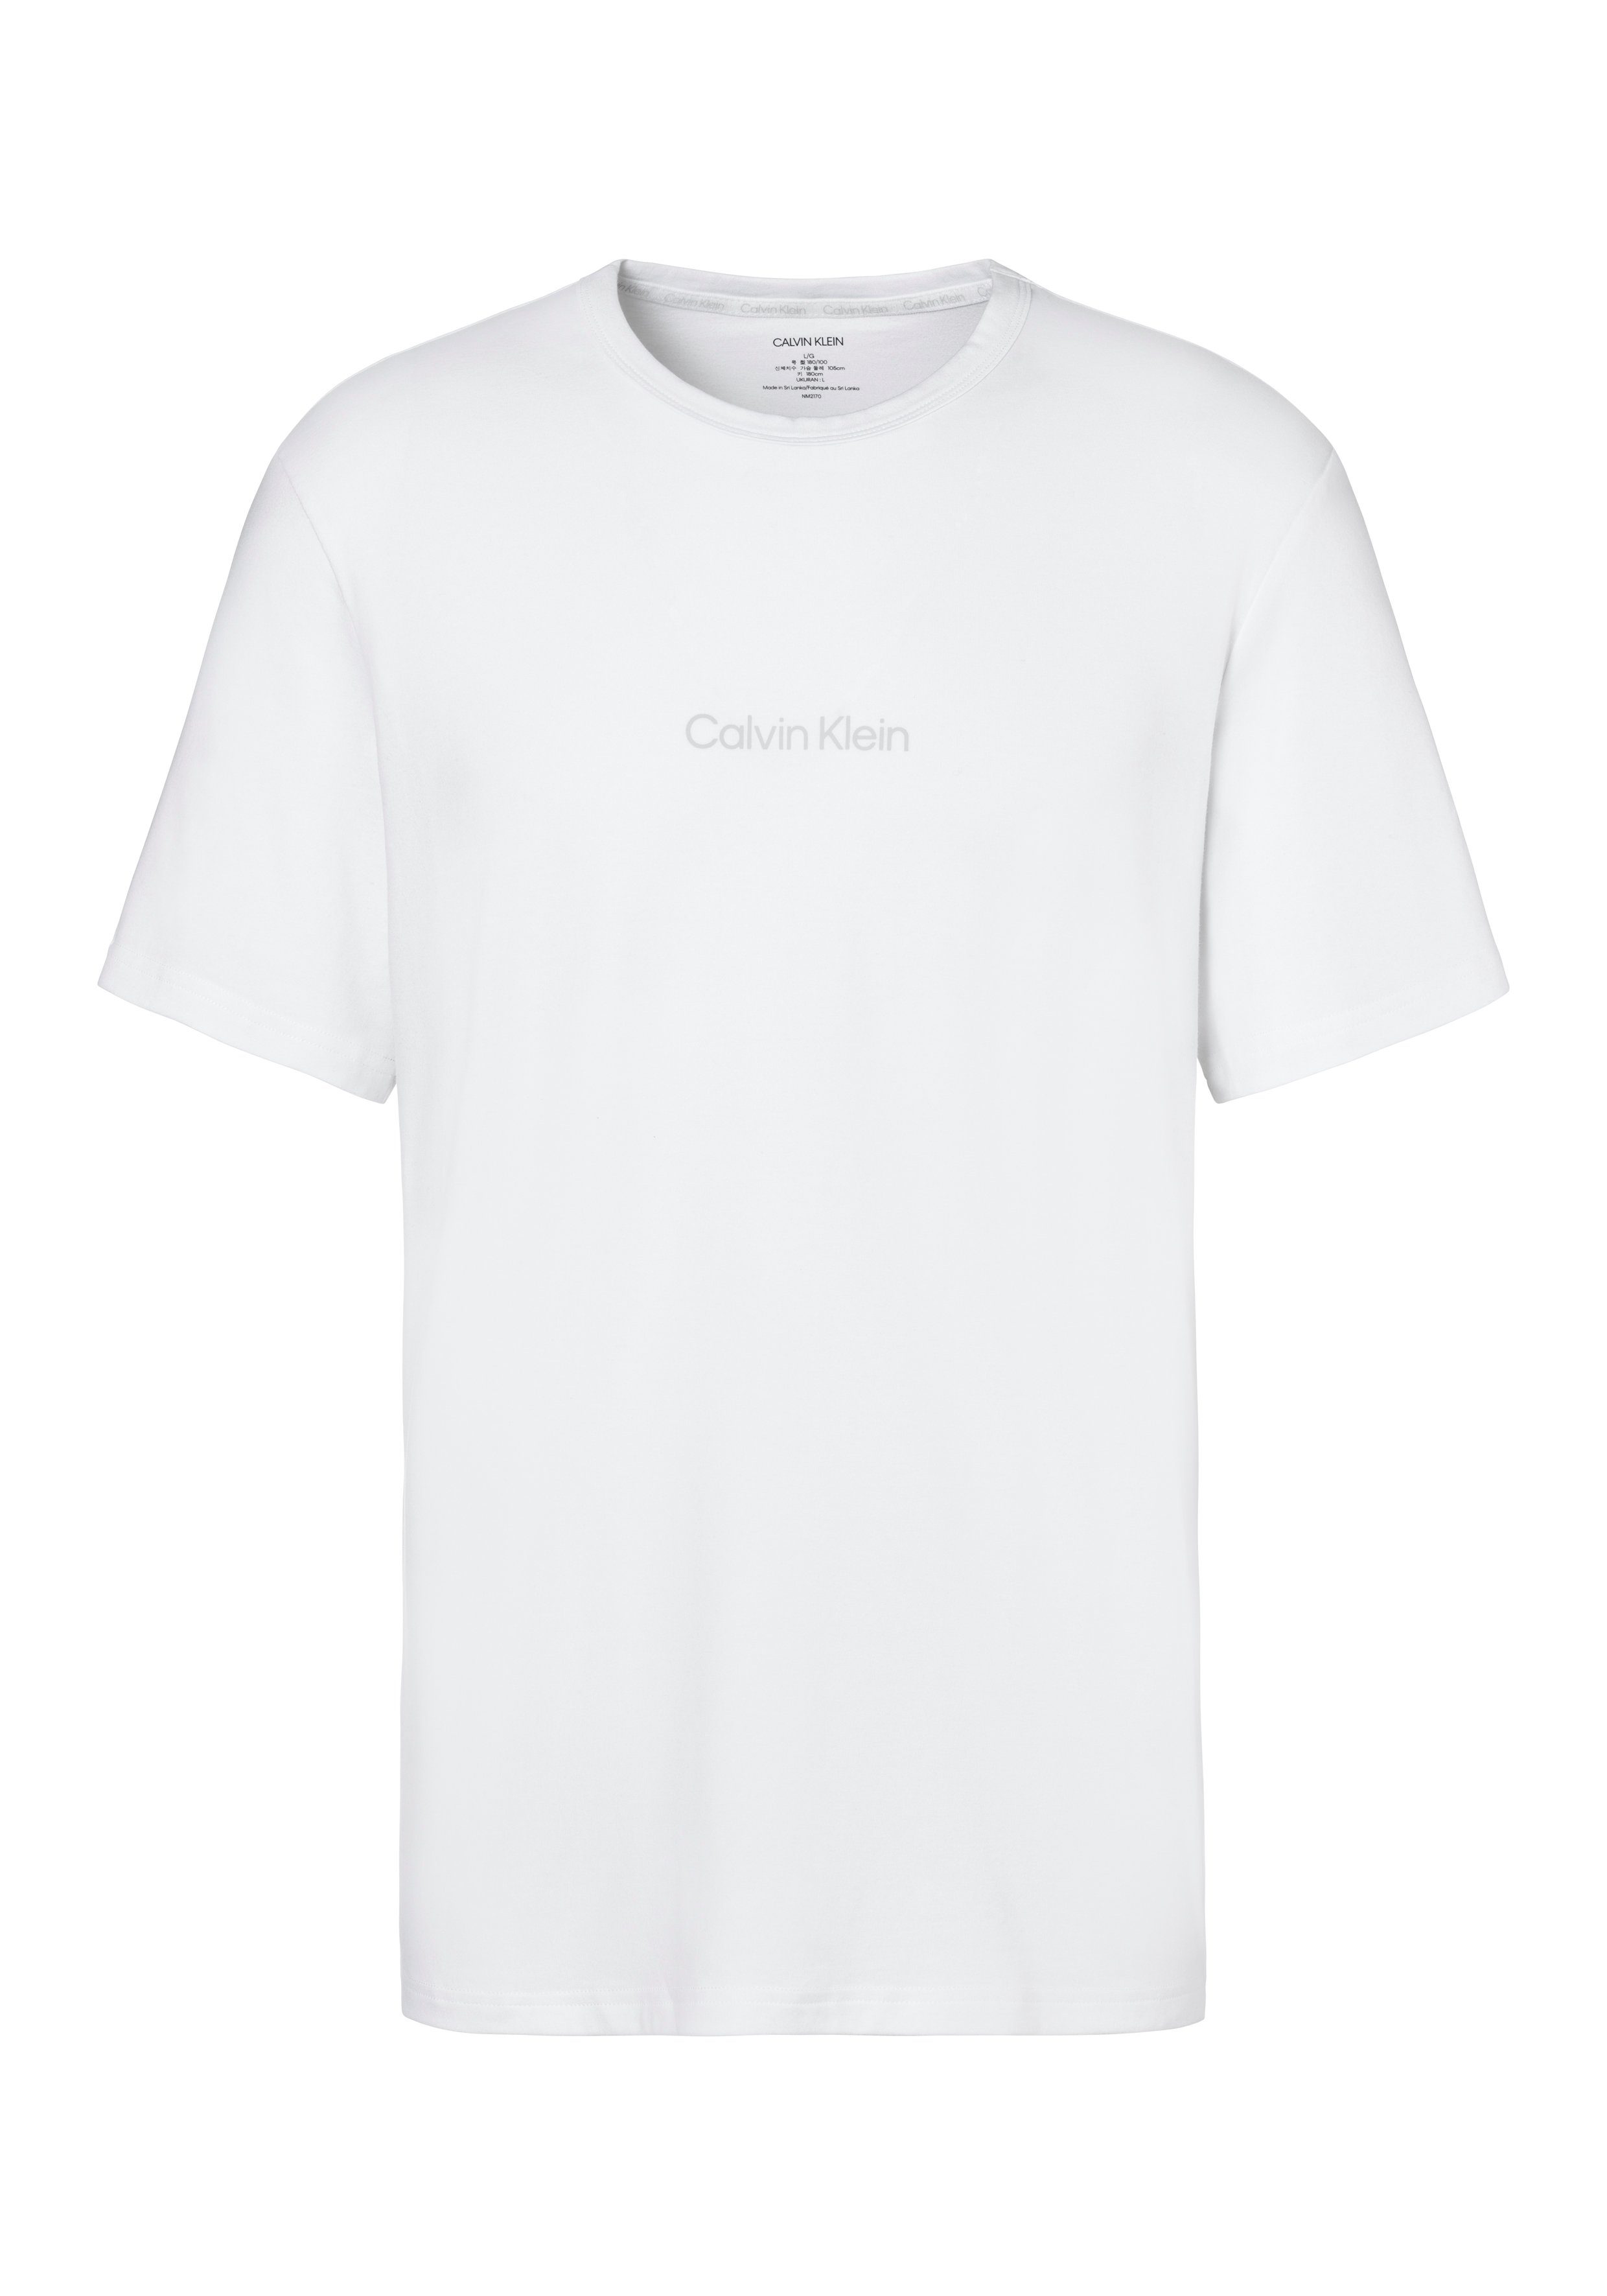 weiß mit Logo Klein T-Shirt Calvin Underwear Druck